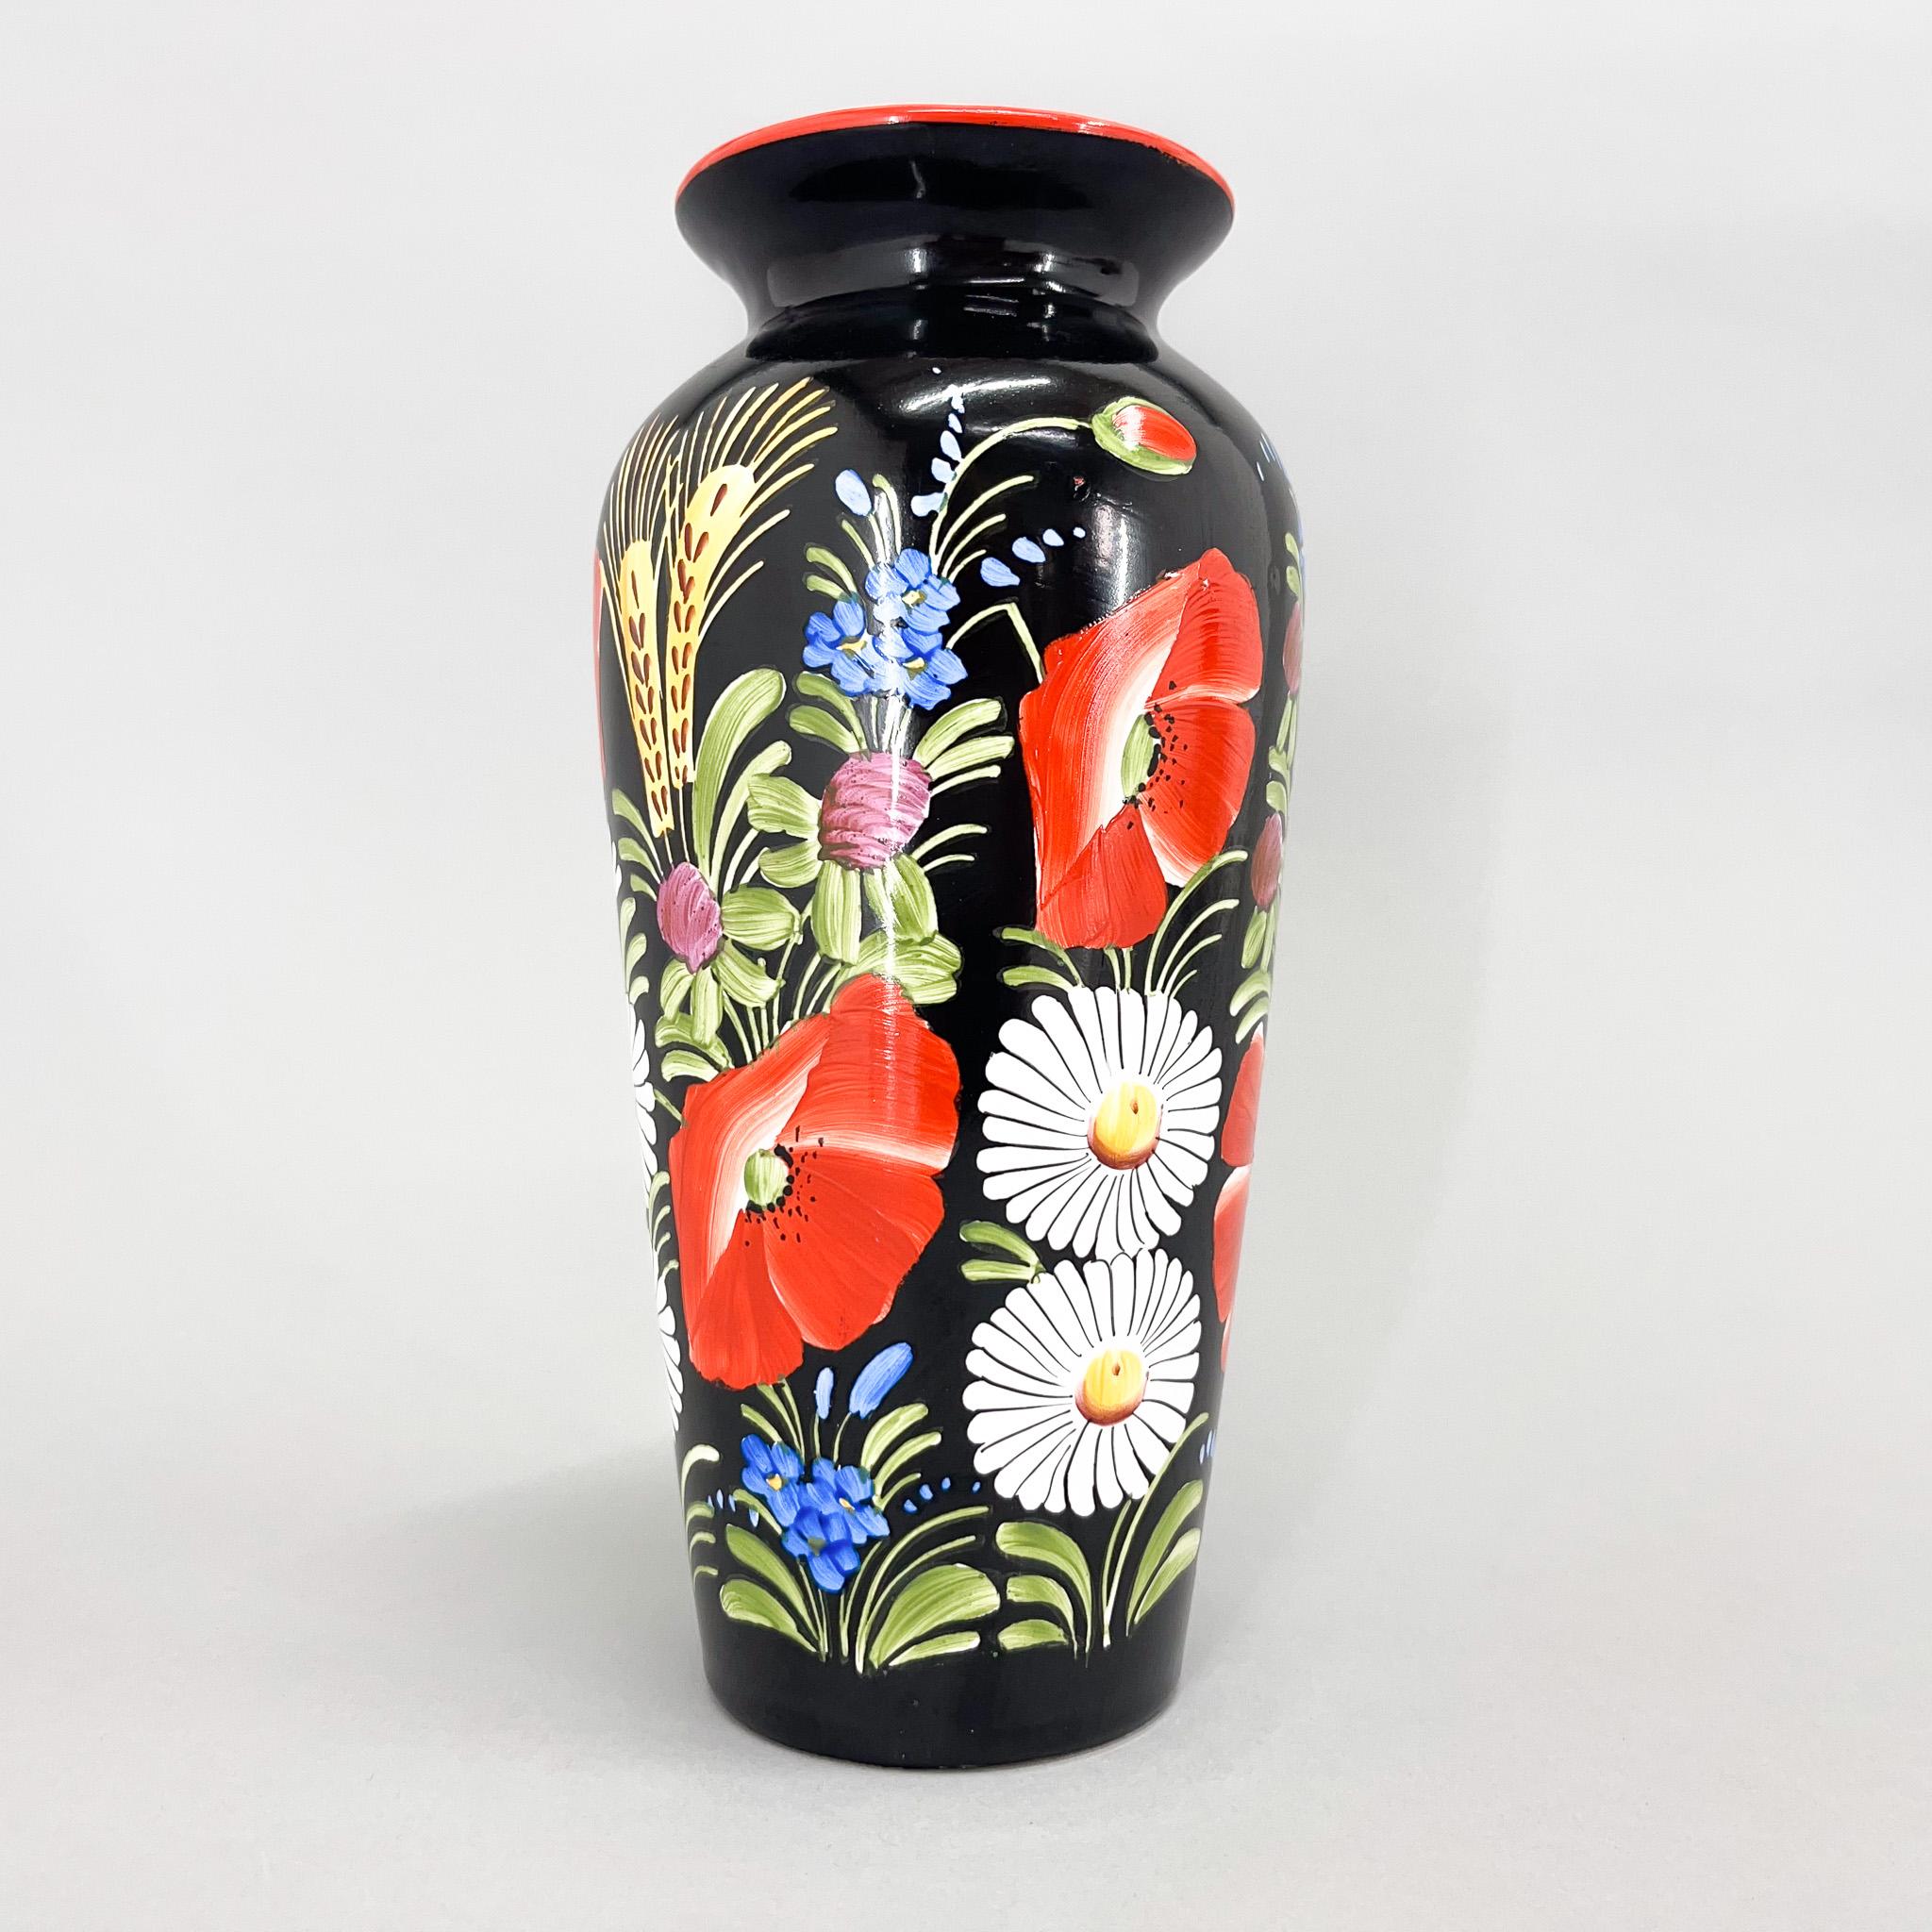 Magnifique vase en céramique vintage peint à la main, fabriqué à Chodsko. Chodsko fait partie de la Bohemia et est célèbre pour ses céramiques traditionnelles basées sur des motifs Chod. Vase en céramique, peint à la main avec des motifs